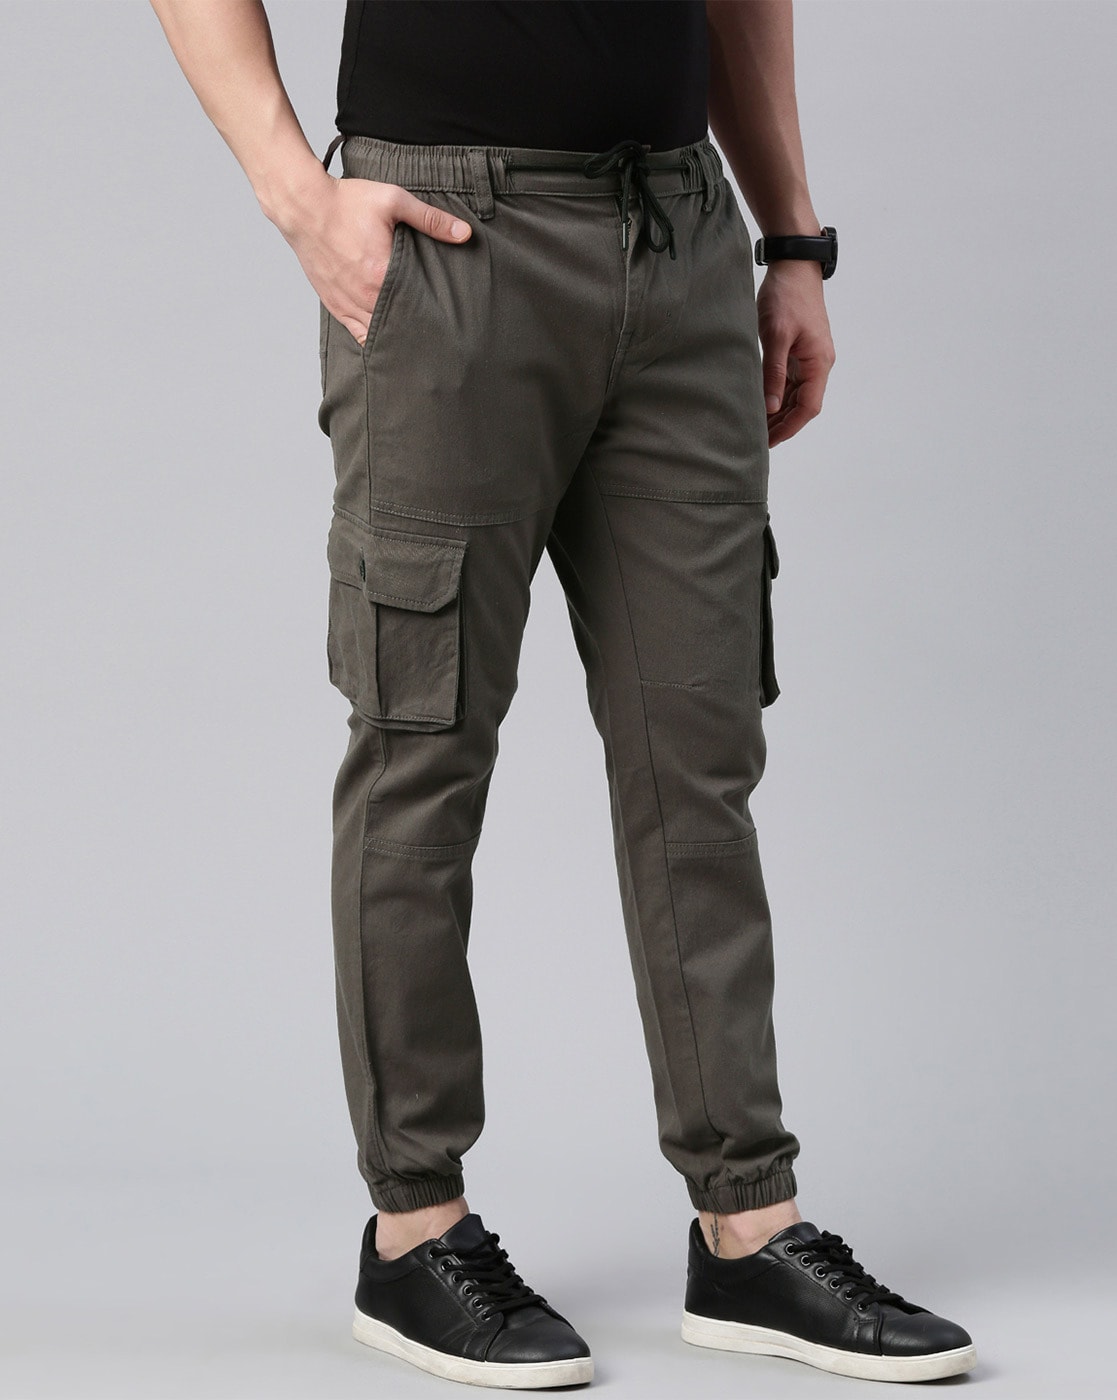 Buy Grey Cargo Pants & Cargo Pants For Men - Apella